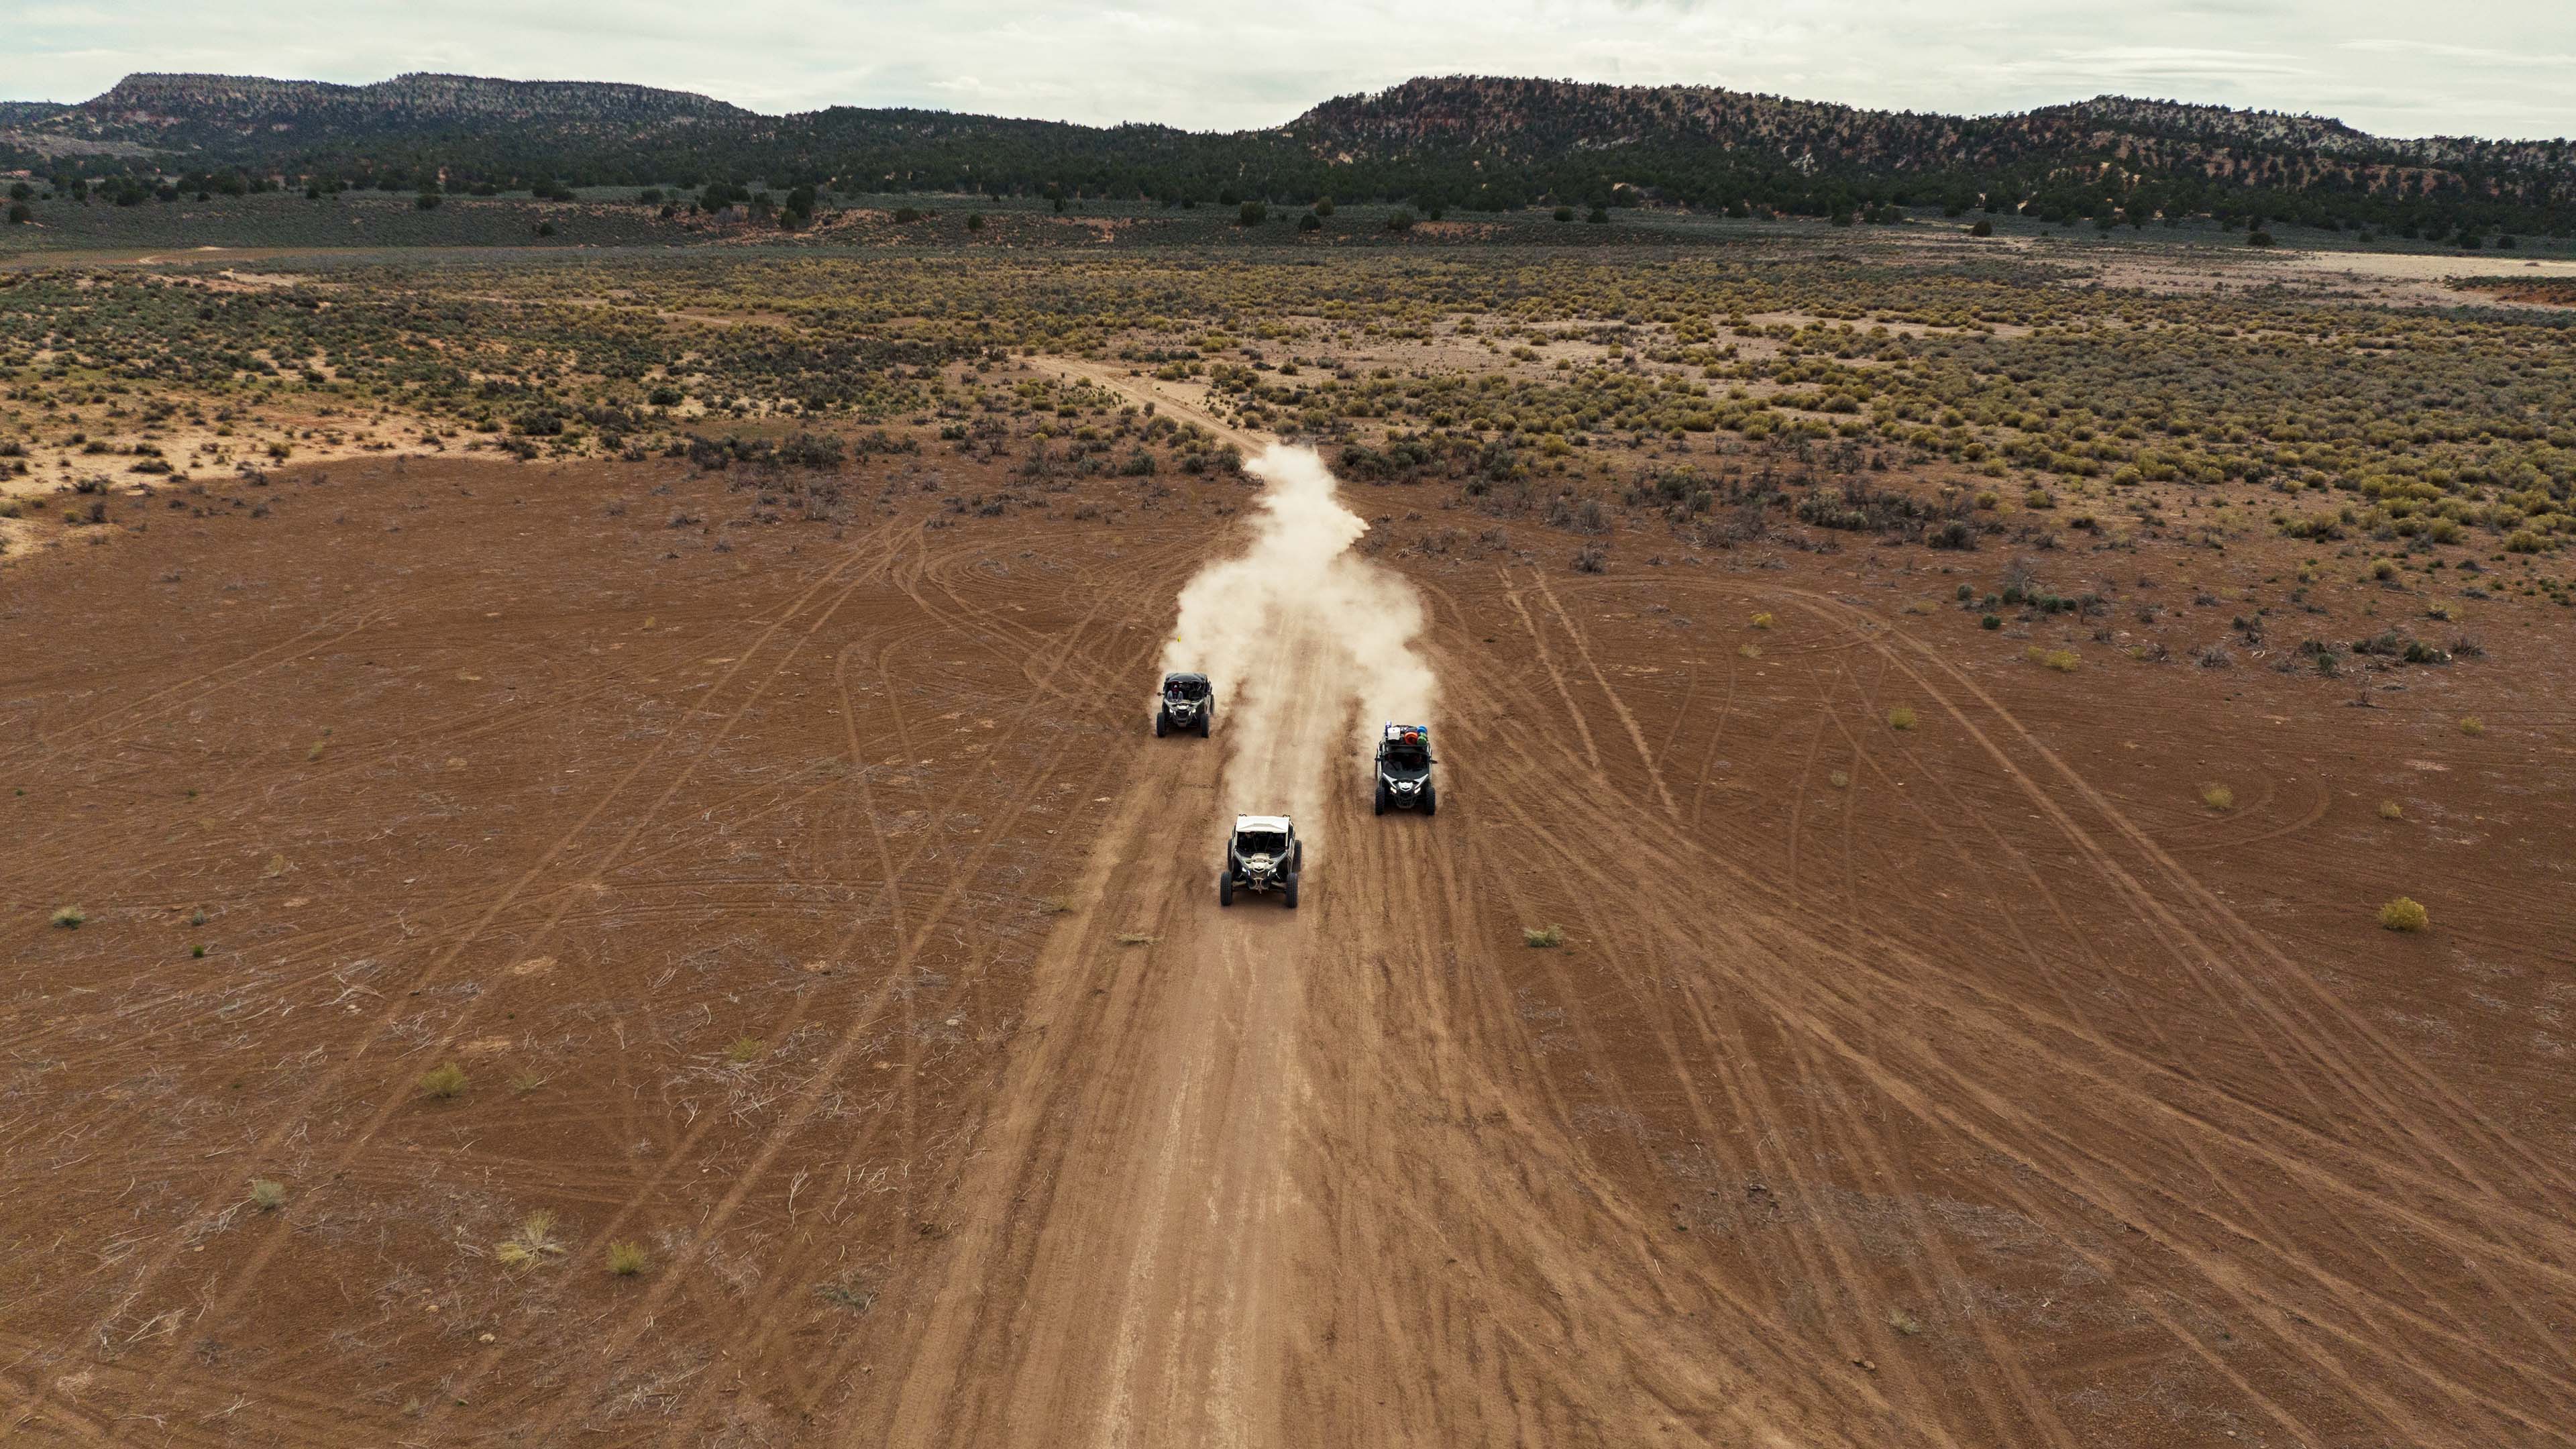 Toprak yolda giden üç Can-Am Off-Road aracı